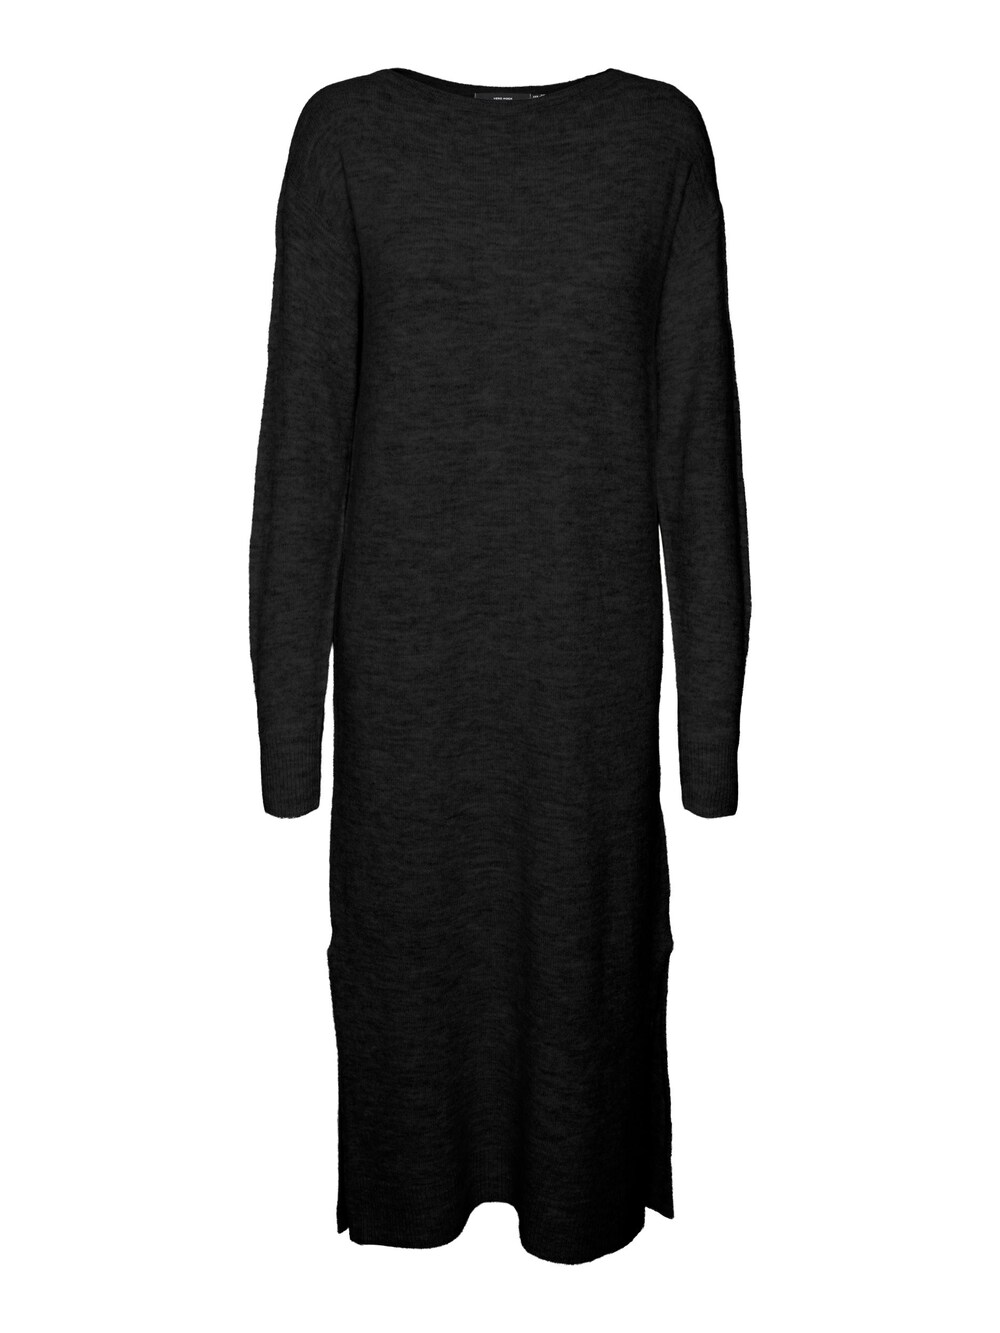 Вязанное платье Vero Moda LEFILE, черный платье миди vero moda lefile long sleeve бежевый